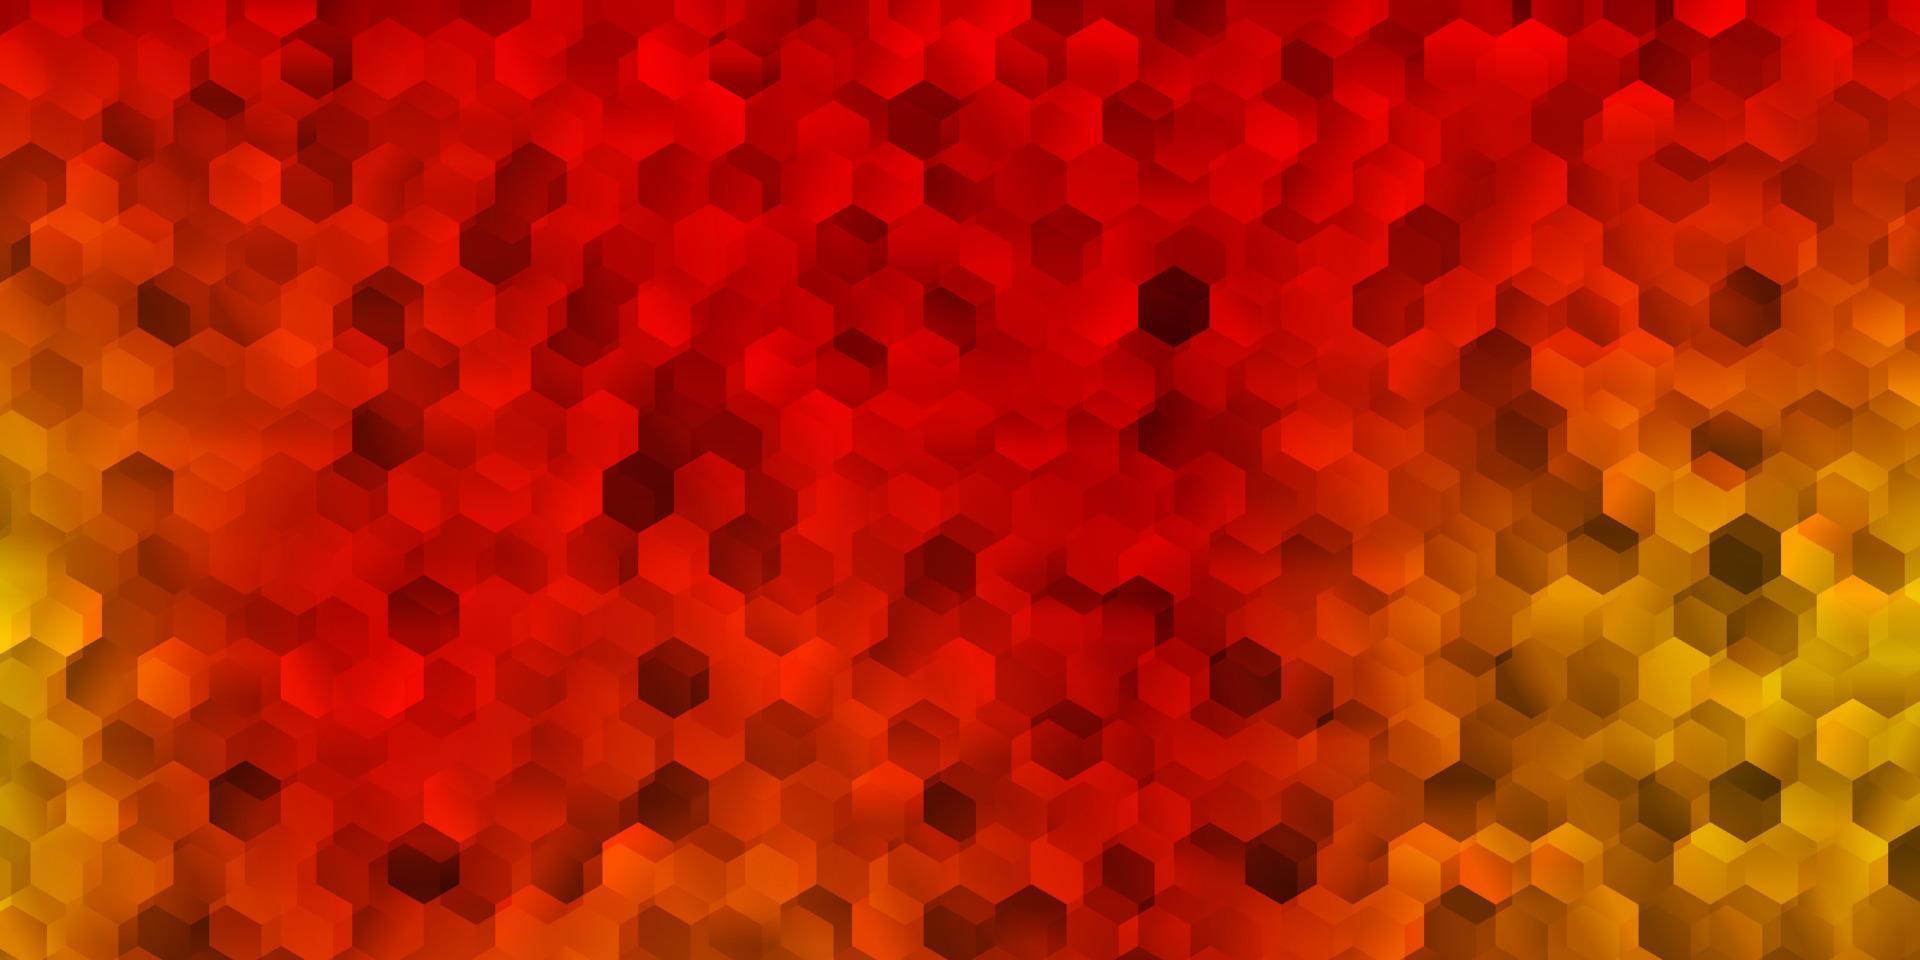 couverture de vecteur orange clair avec des hexagones simples.